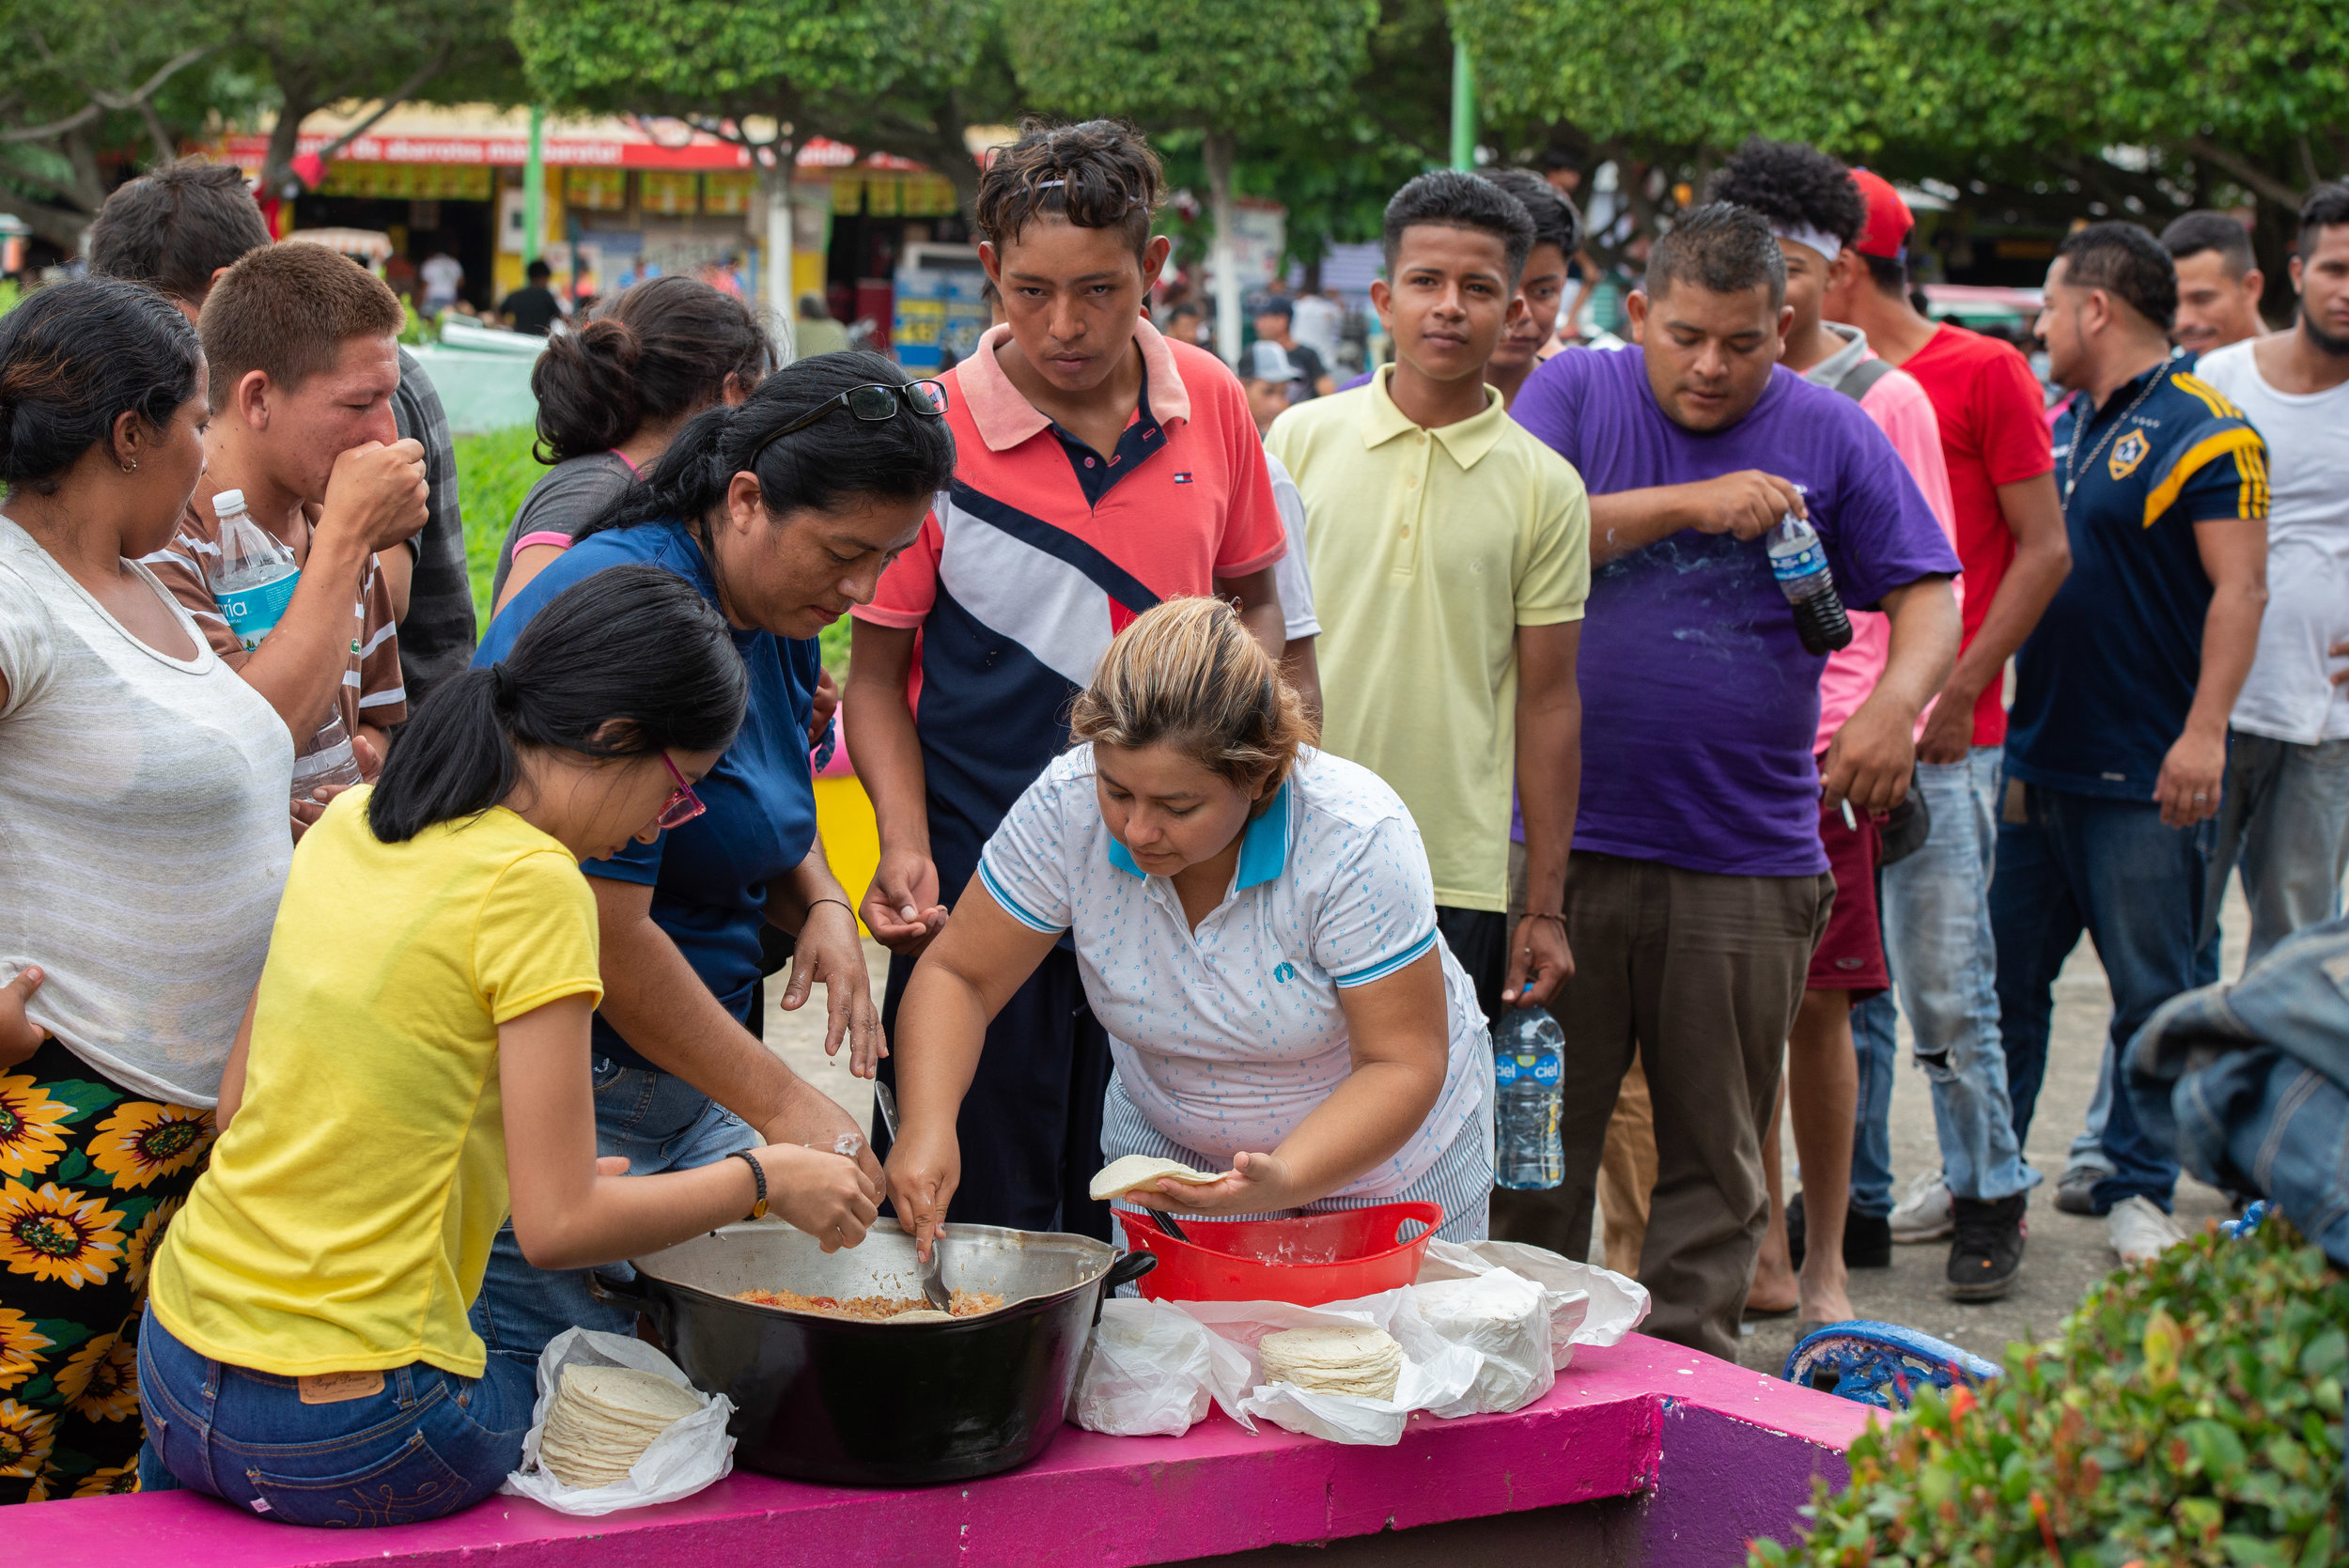  Mexicanos de Ciudad Hidalgo, compartiendo la comida. | Mexicans in the City of Hidalgo, sharing their food.  